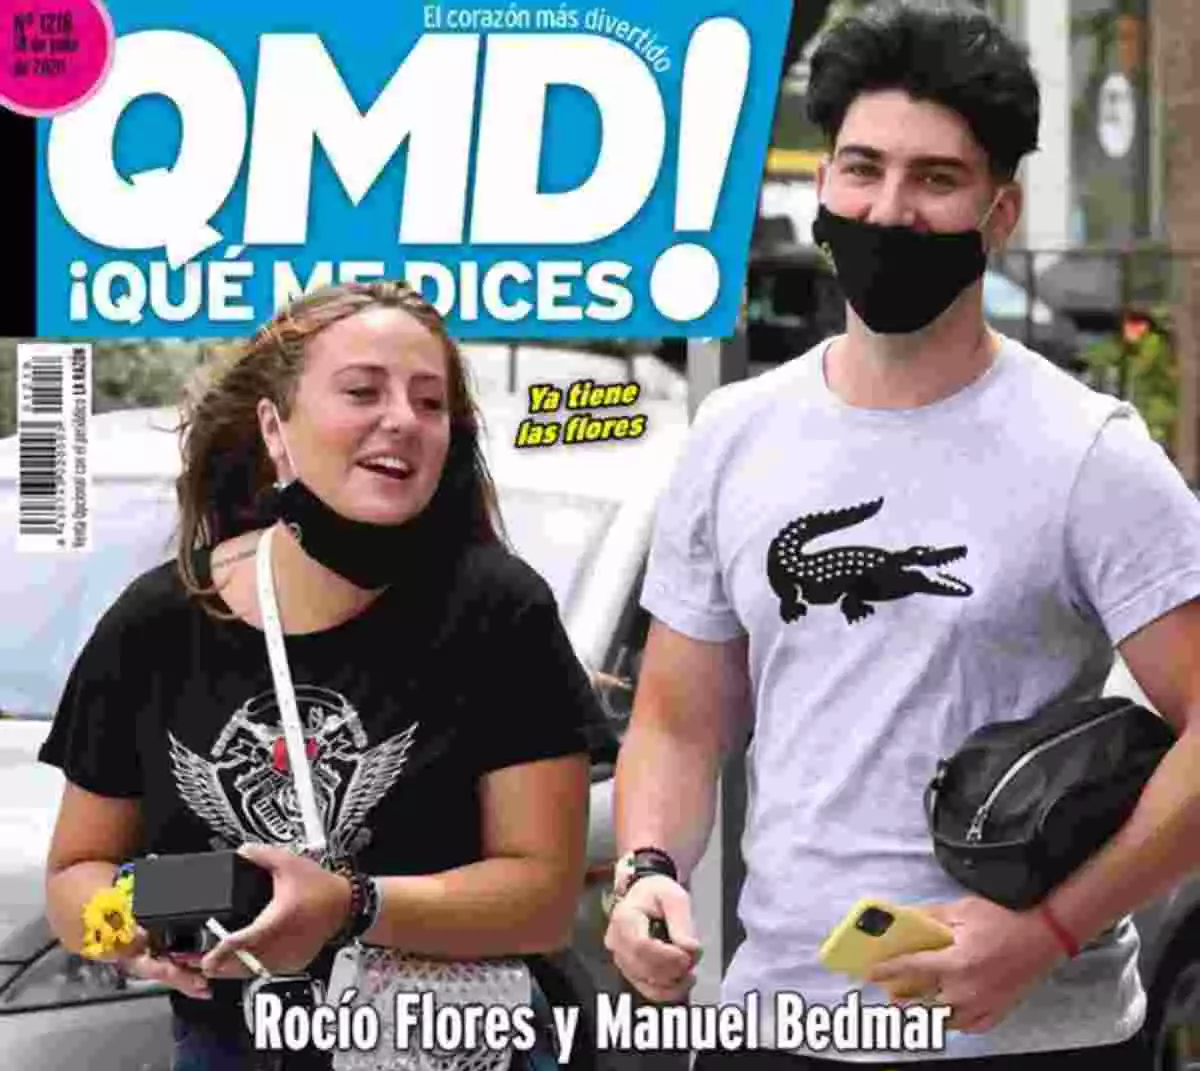 Rocío Flores y Manuel Bedmar en la portada de Que me dices.